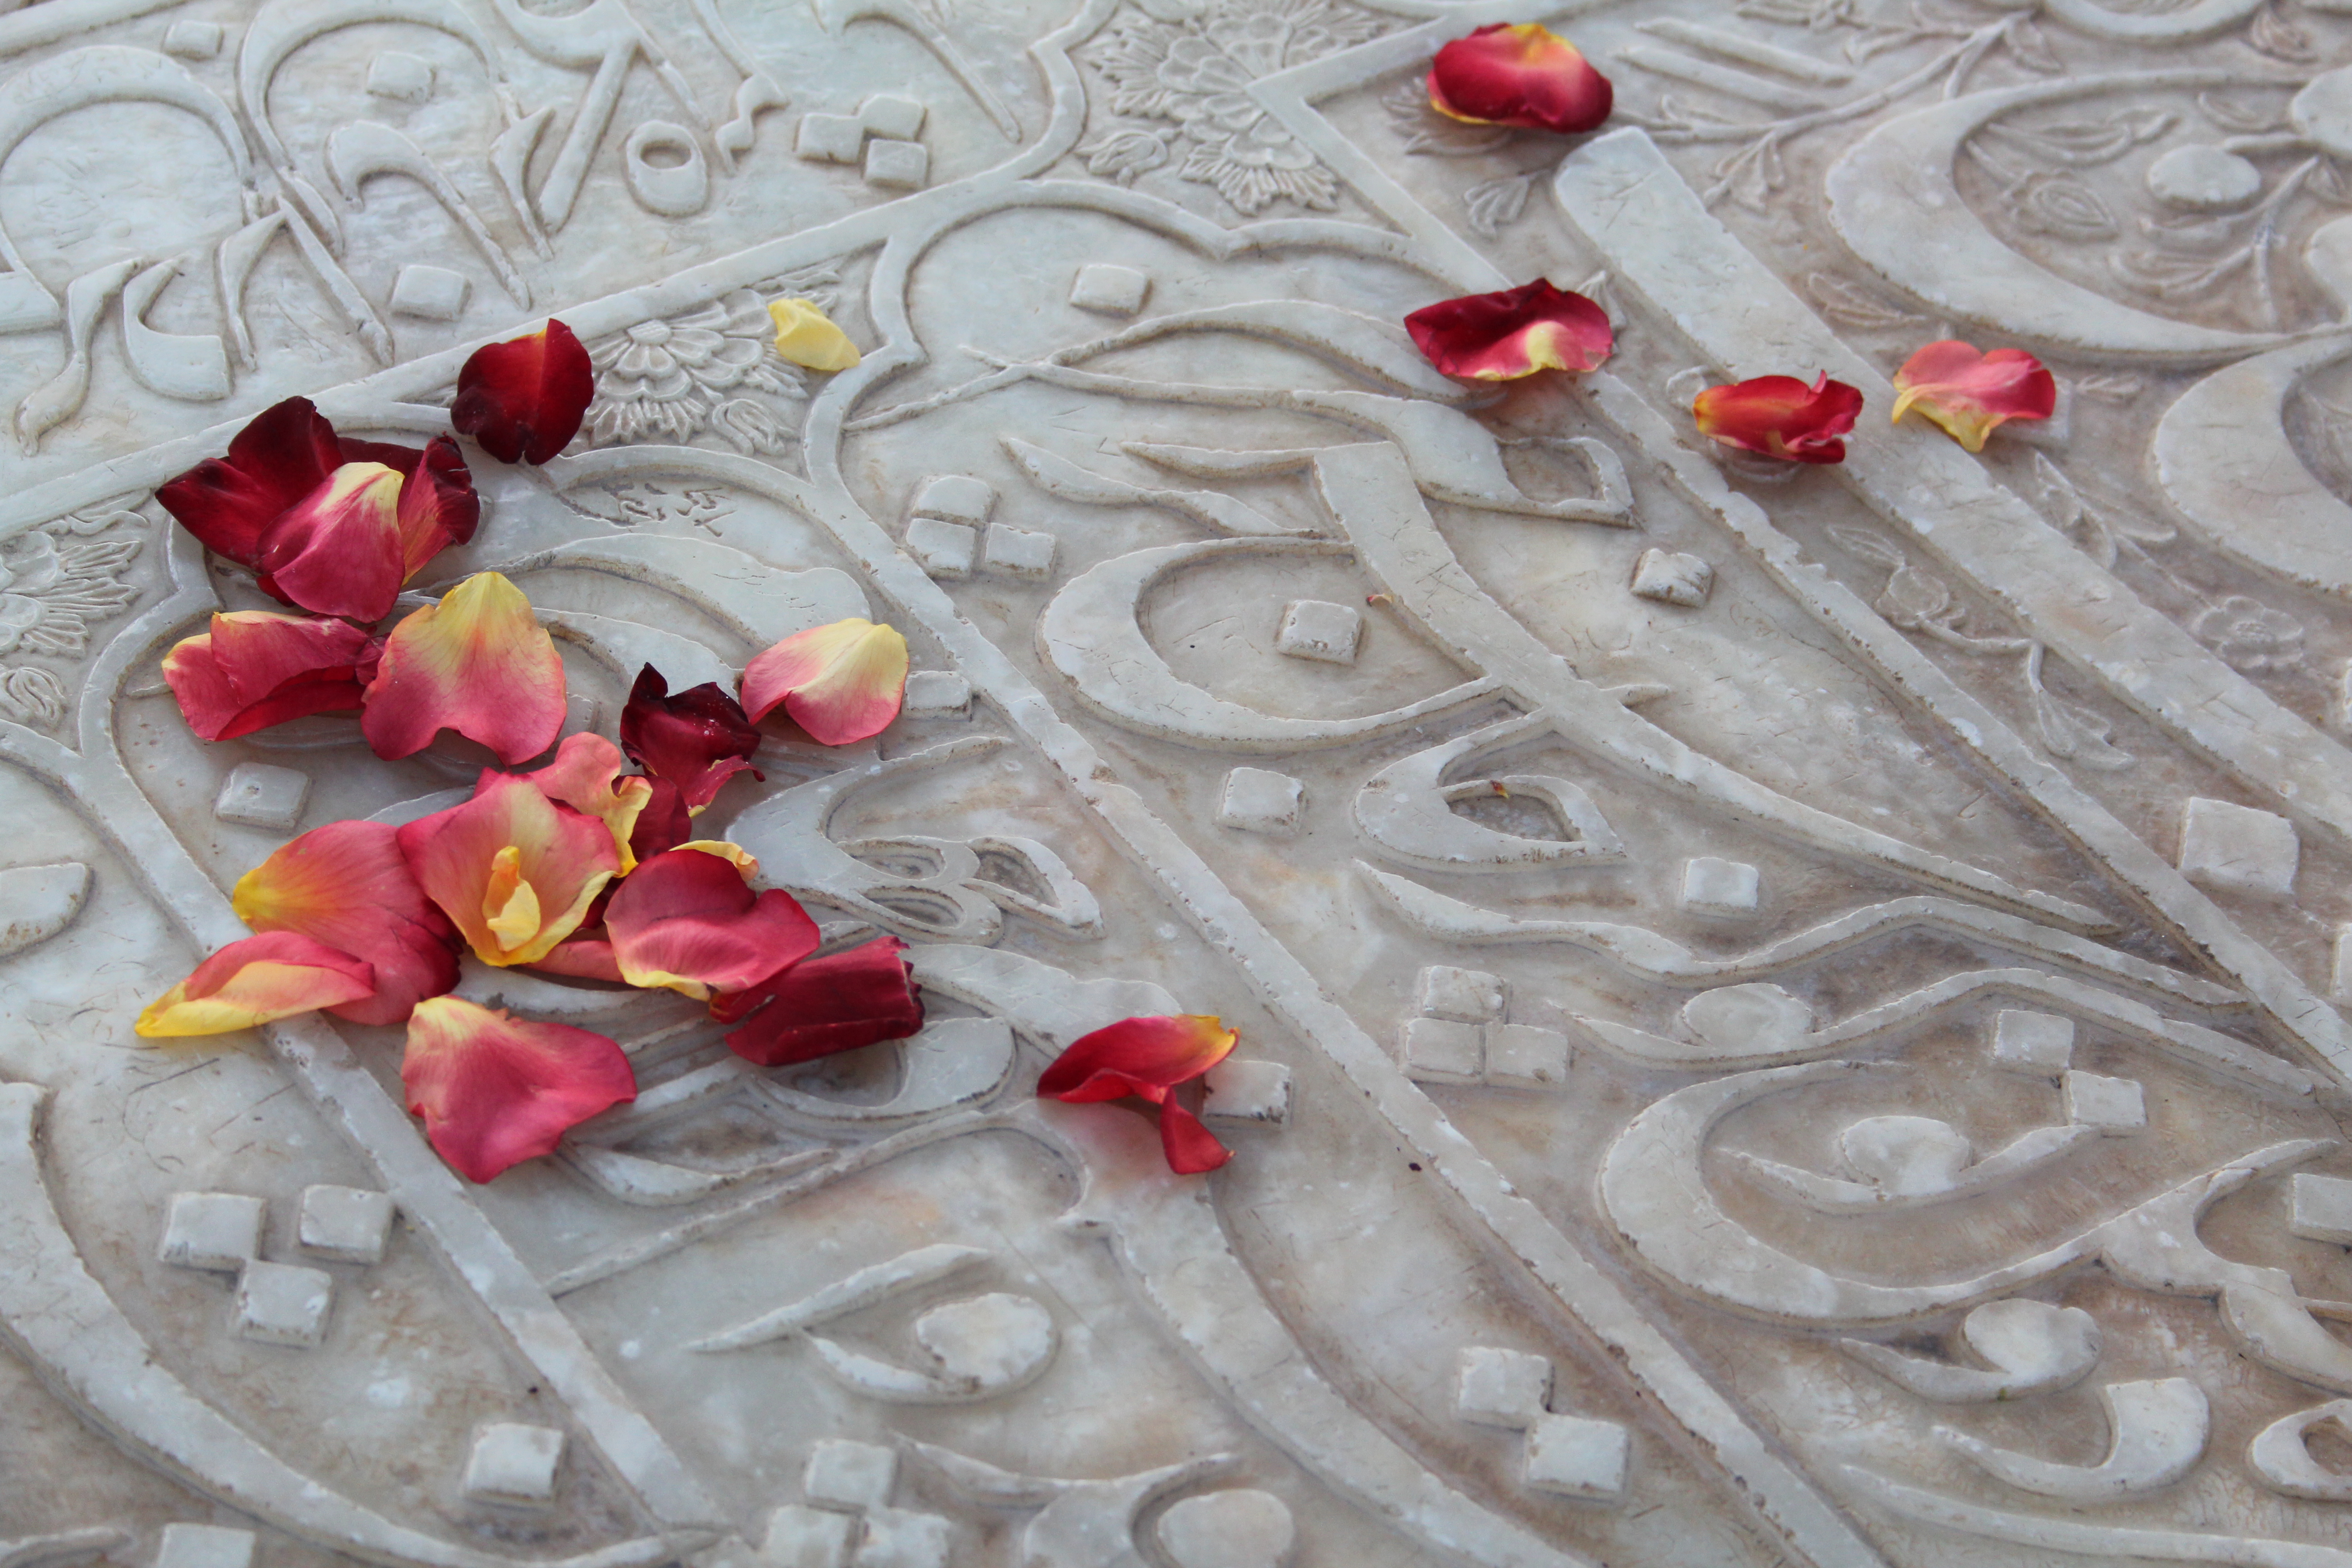 Ein Besucher hat Rosenblätter auf den marmornen Grabstein von Hafis gestreut. (Foto: Marian Brehmer)